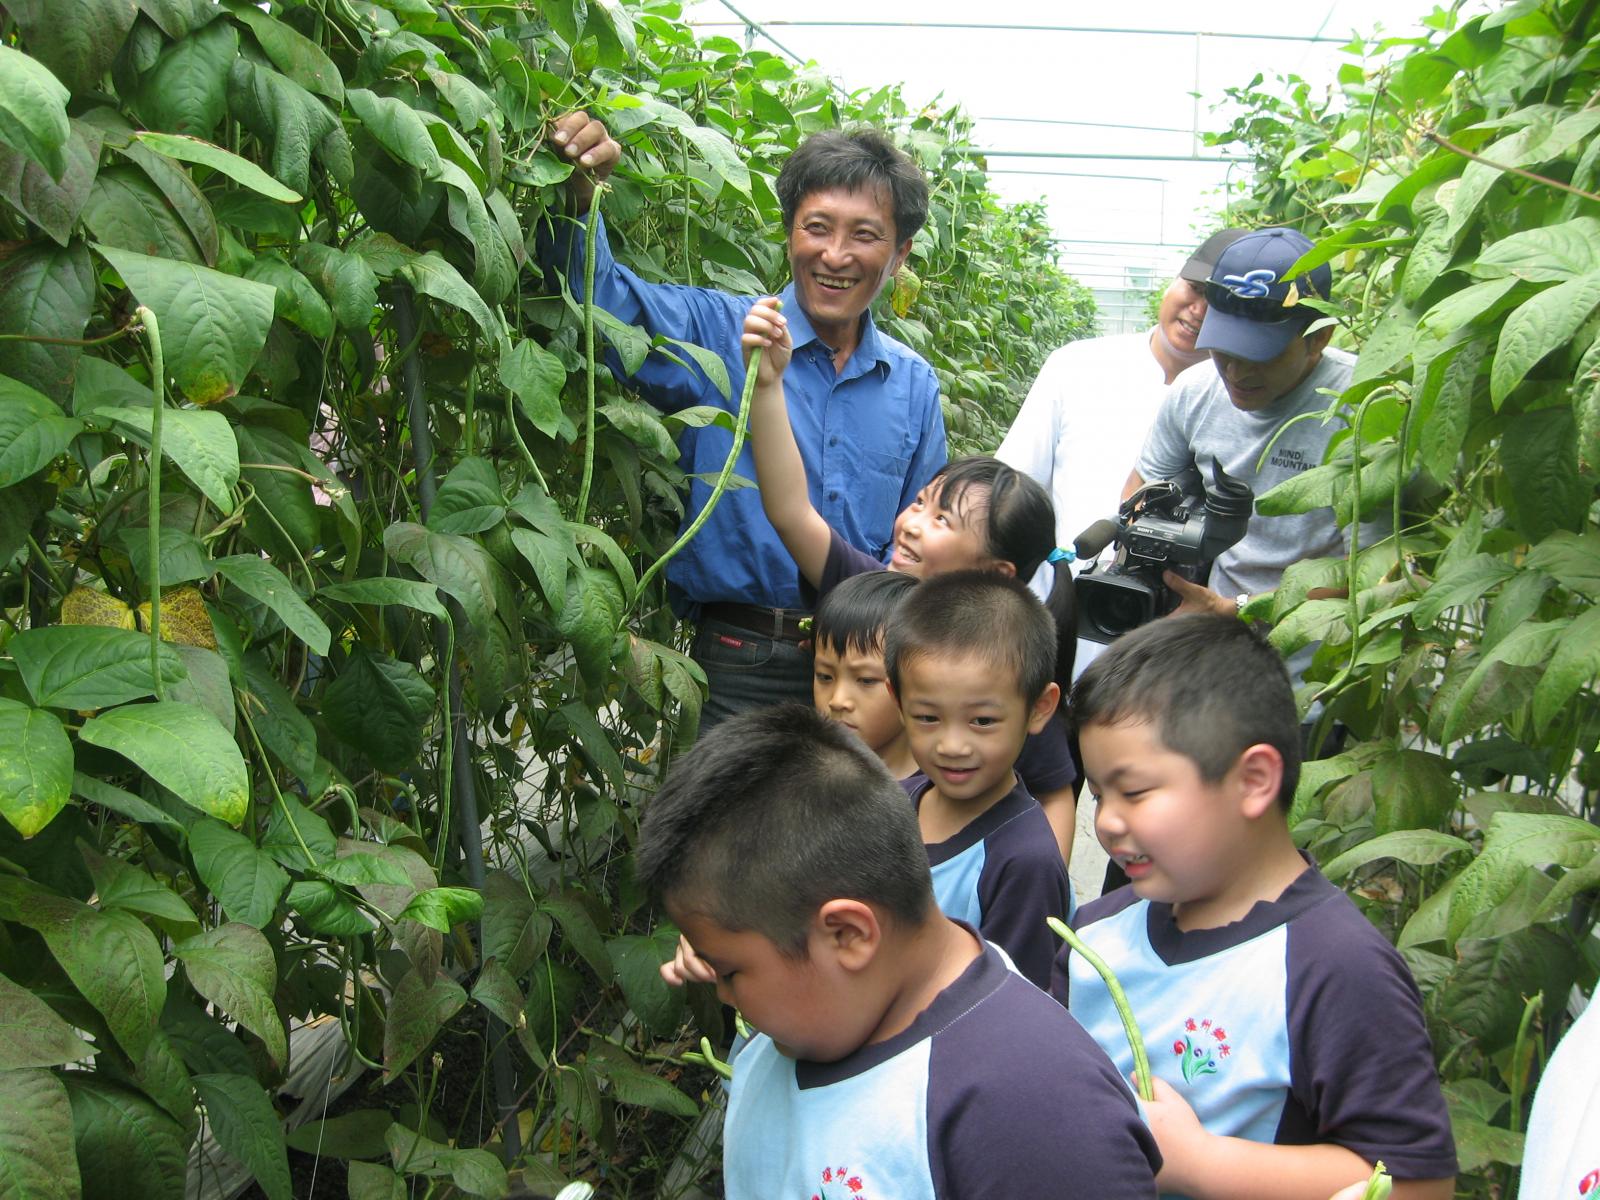 陳蒼鄢叔叔向小朋友們介紹小黃瓜